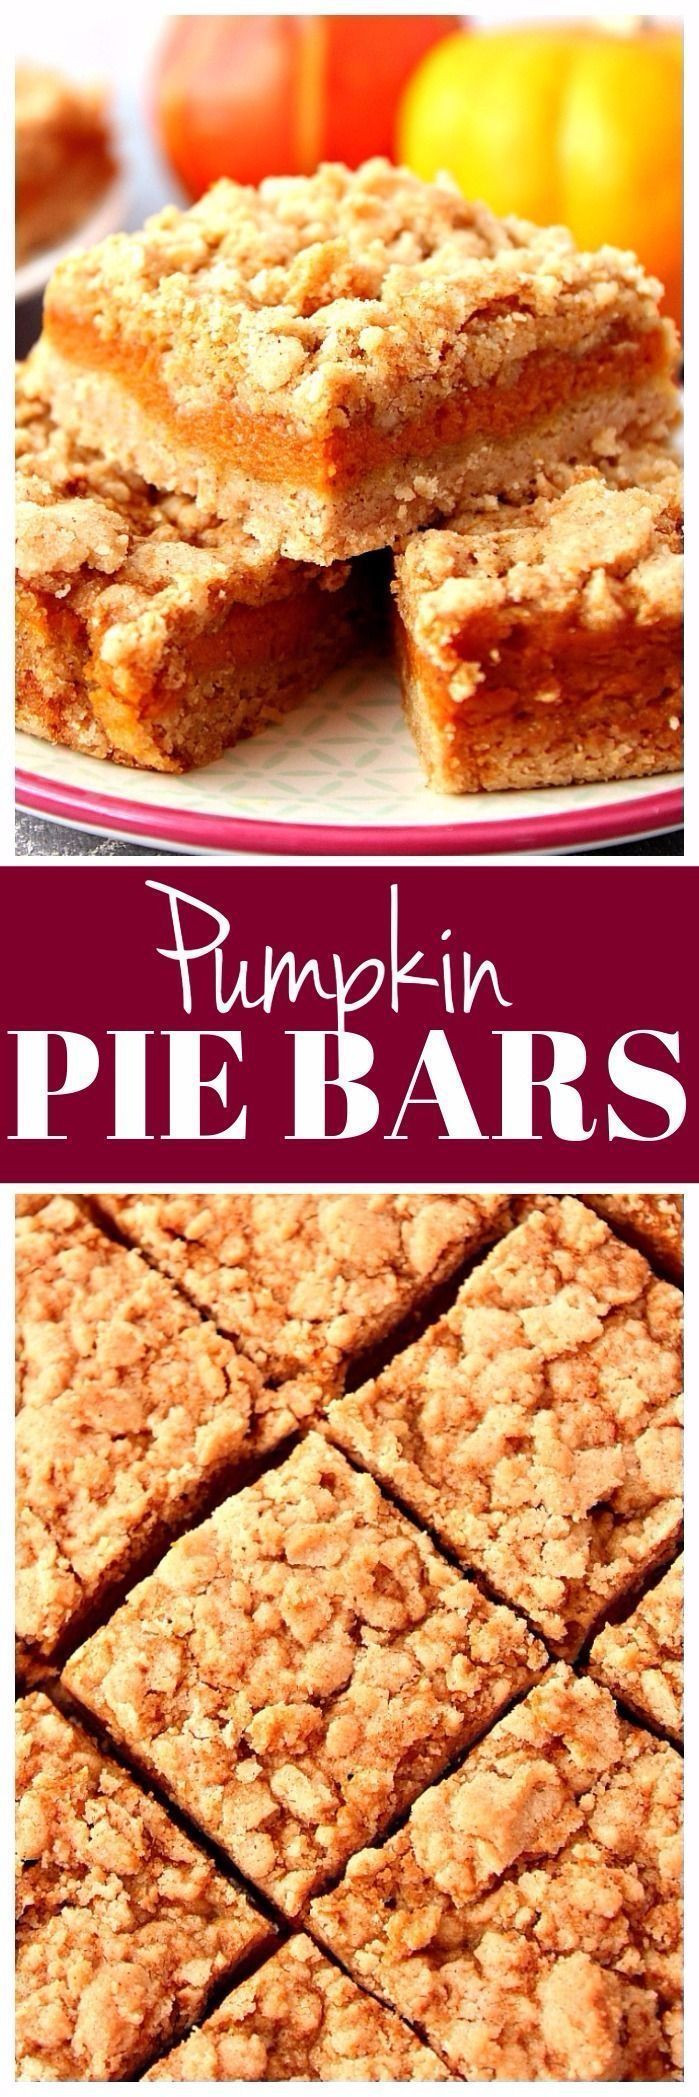 Quick And Easy Pumpkin Desserts
 Pumpkin Pie Bars recipe quick and easy dessert bars that